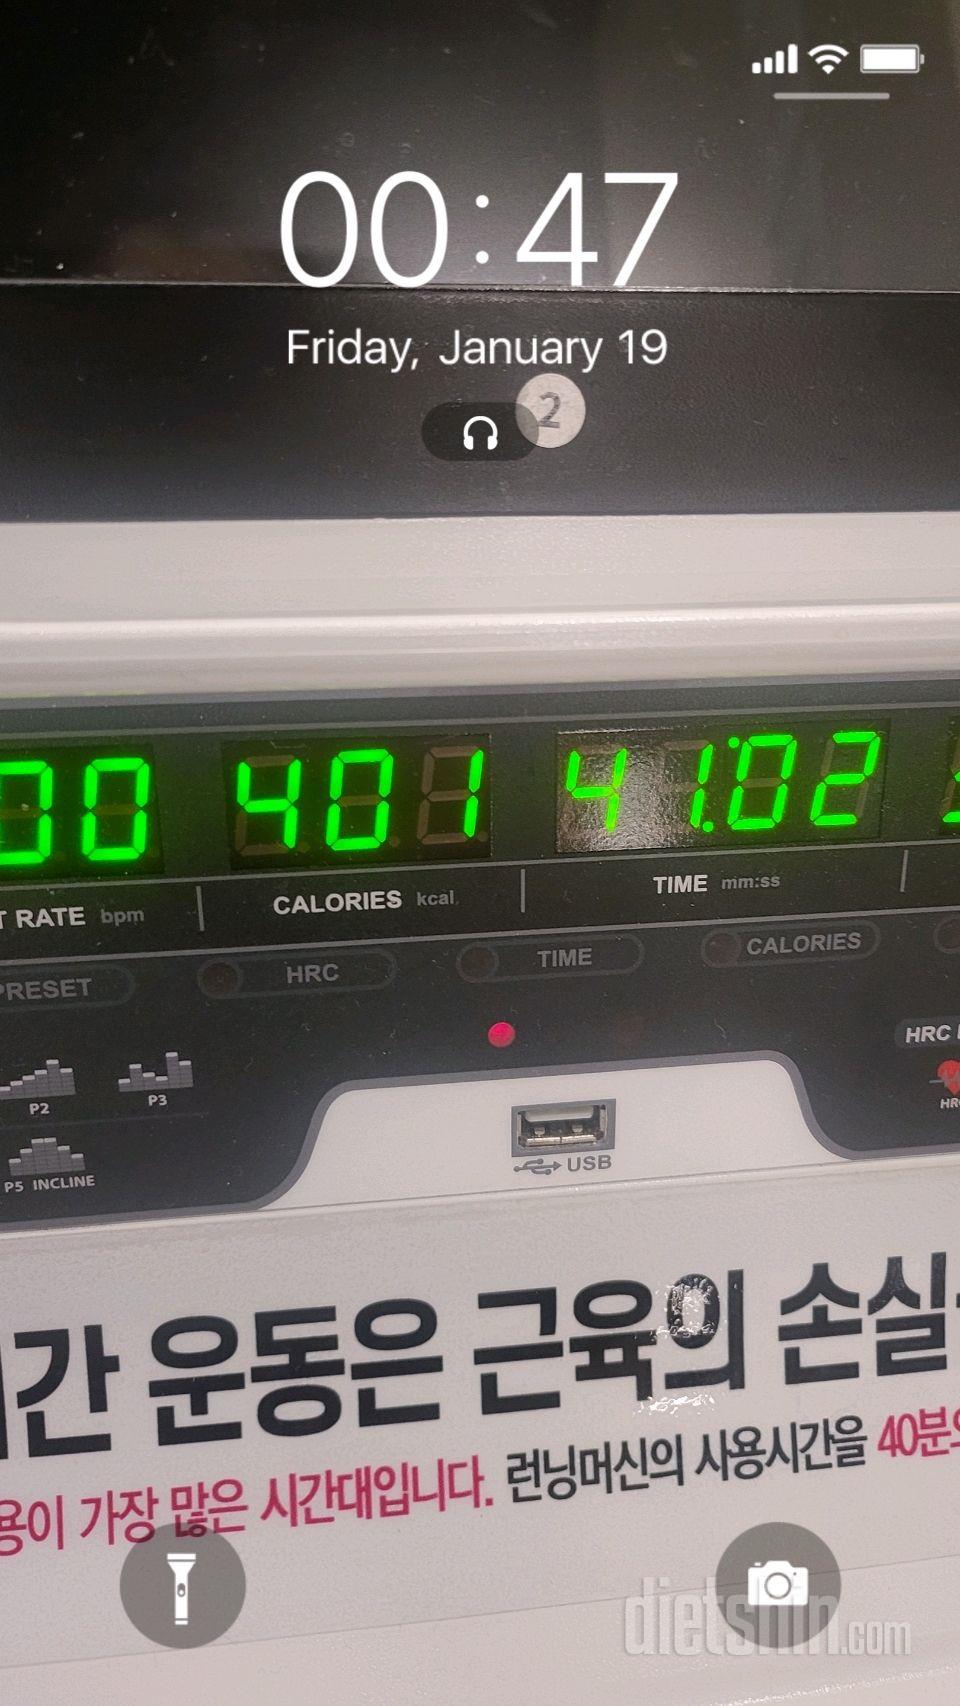 30일 유산소 운동9일차 성공!